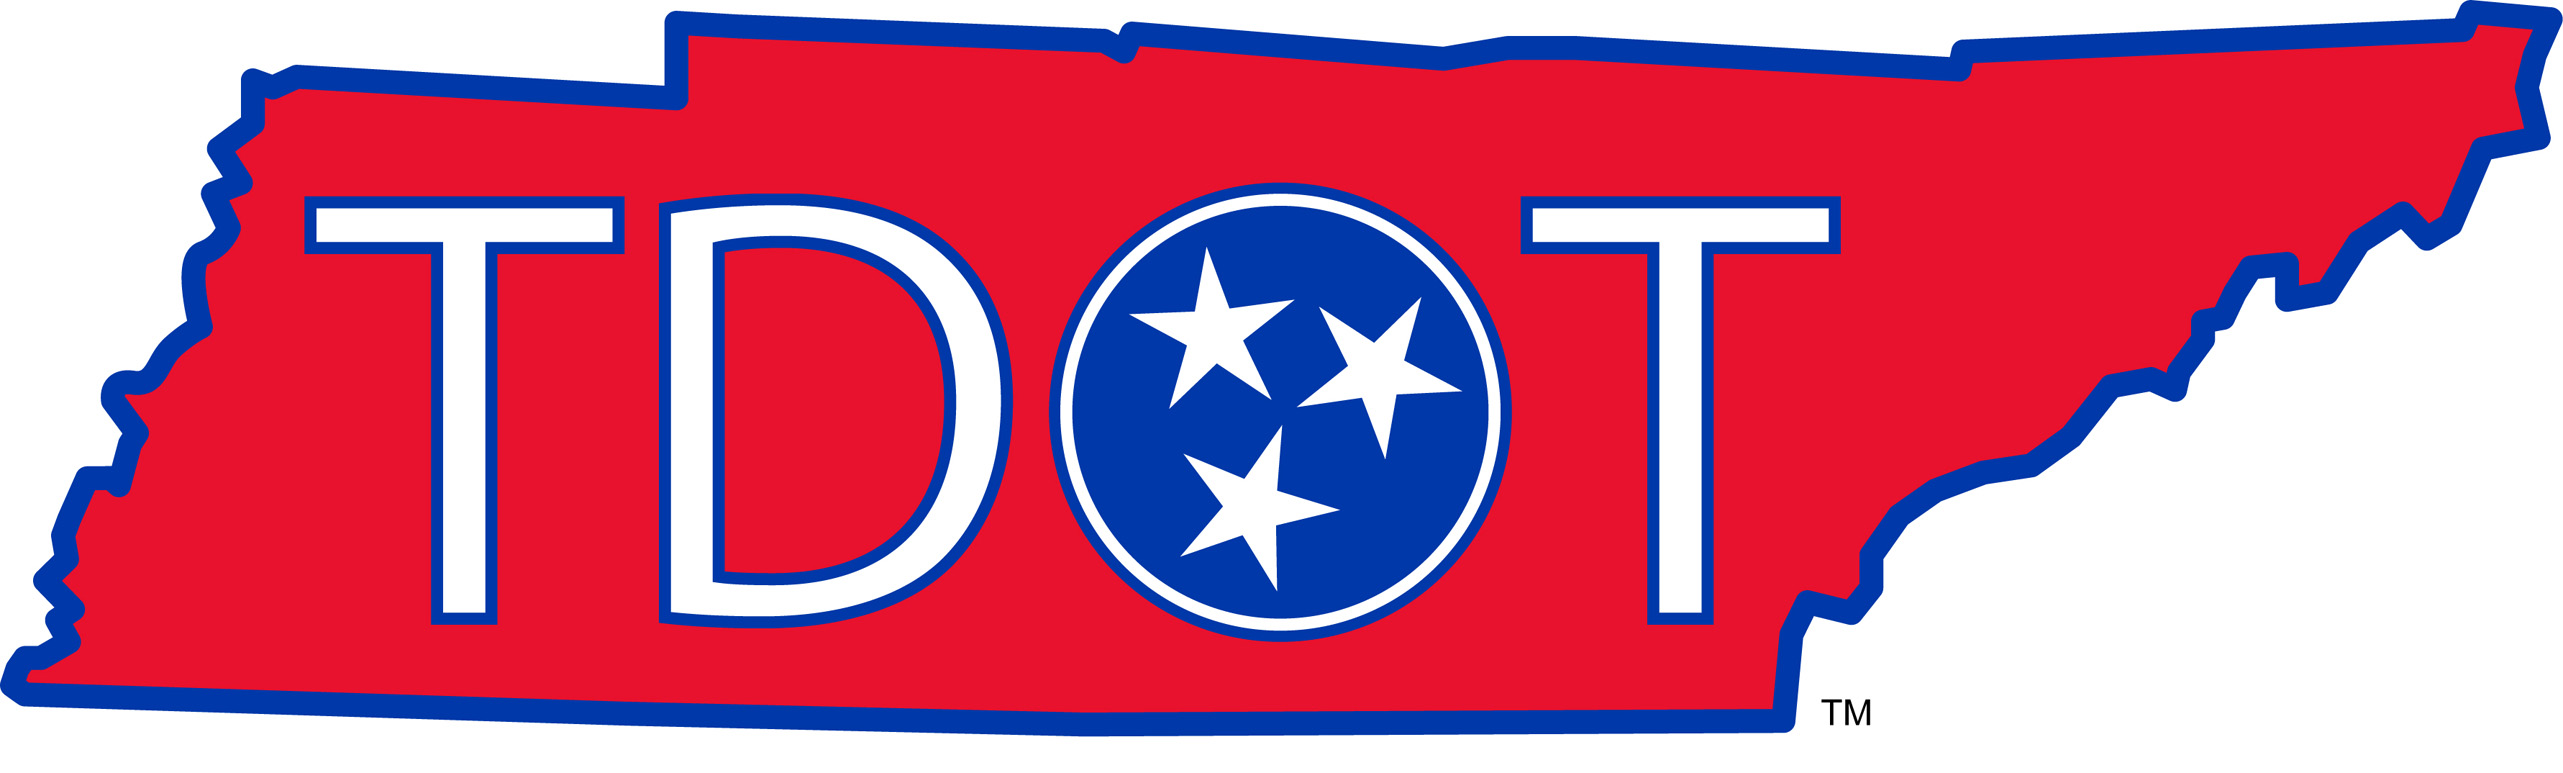 TDOT logo